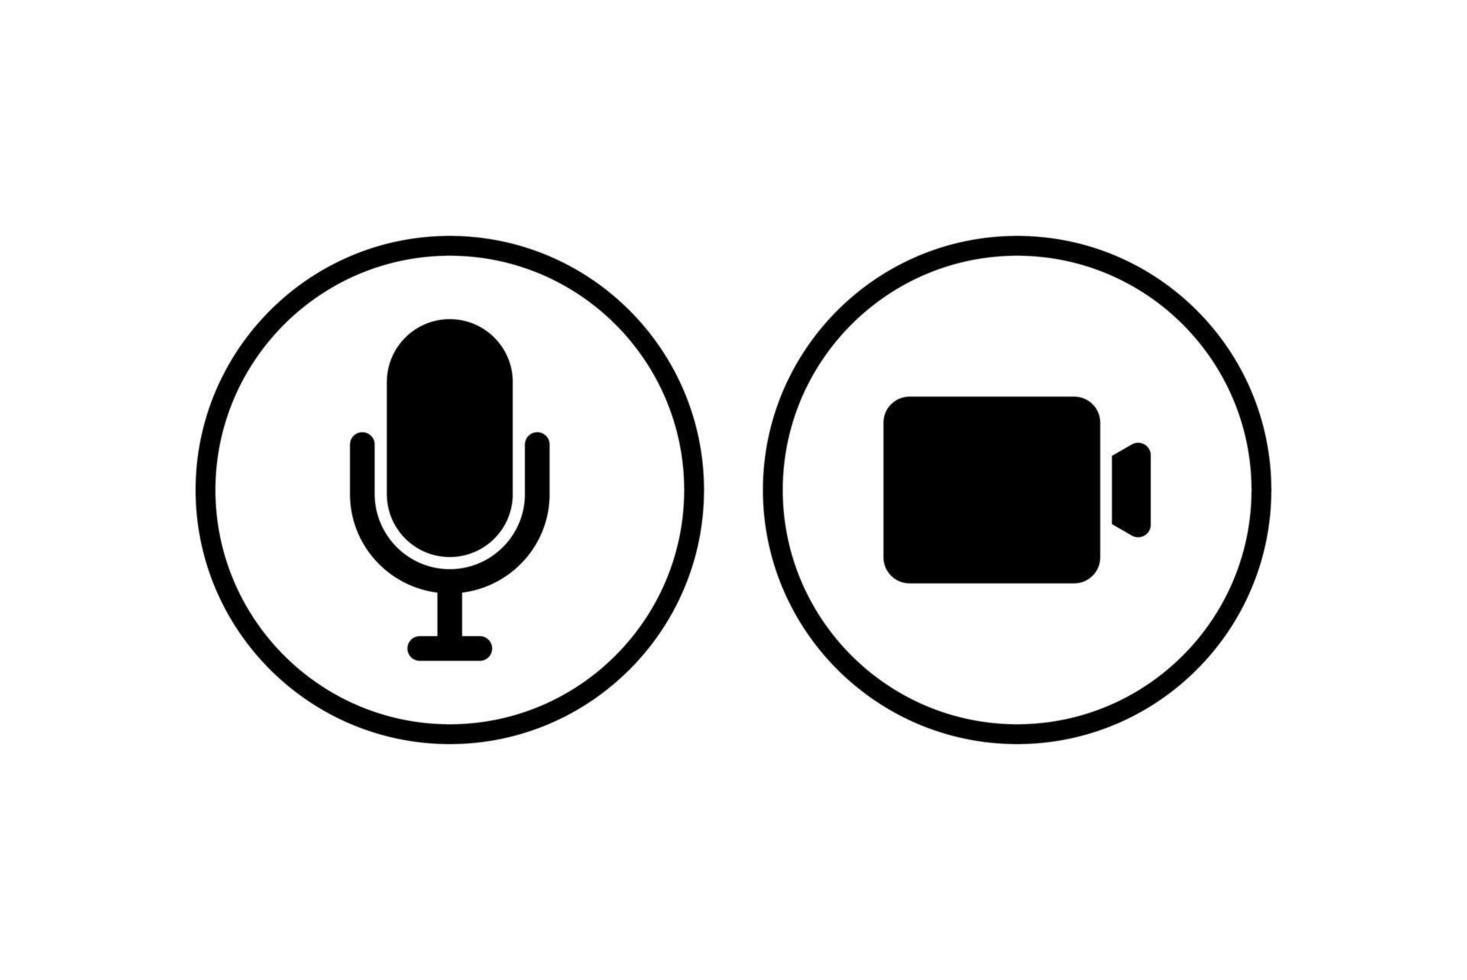 icônes liées au haut-parleur, au micro et à la caméra vidéo. icônes de base pour la vidéoconférence, le webinaire et le chat vidéo. vecteur